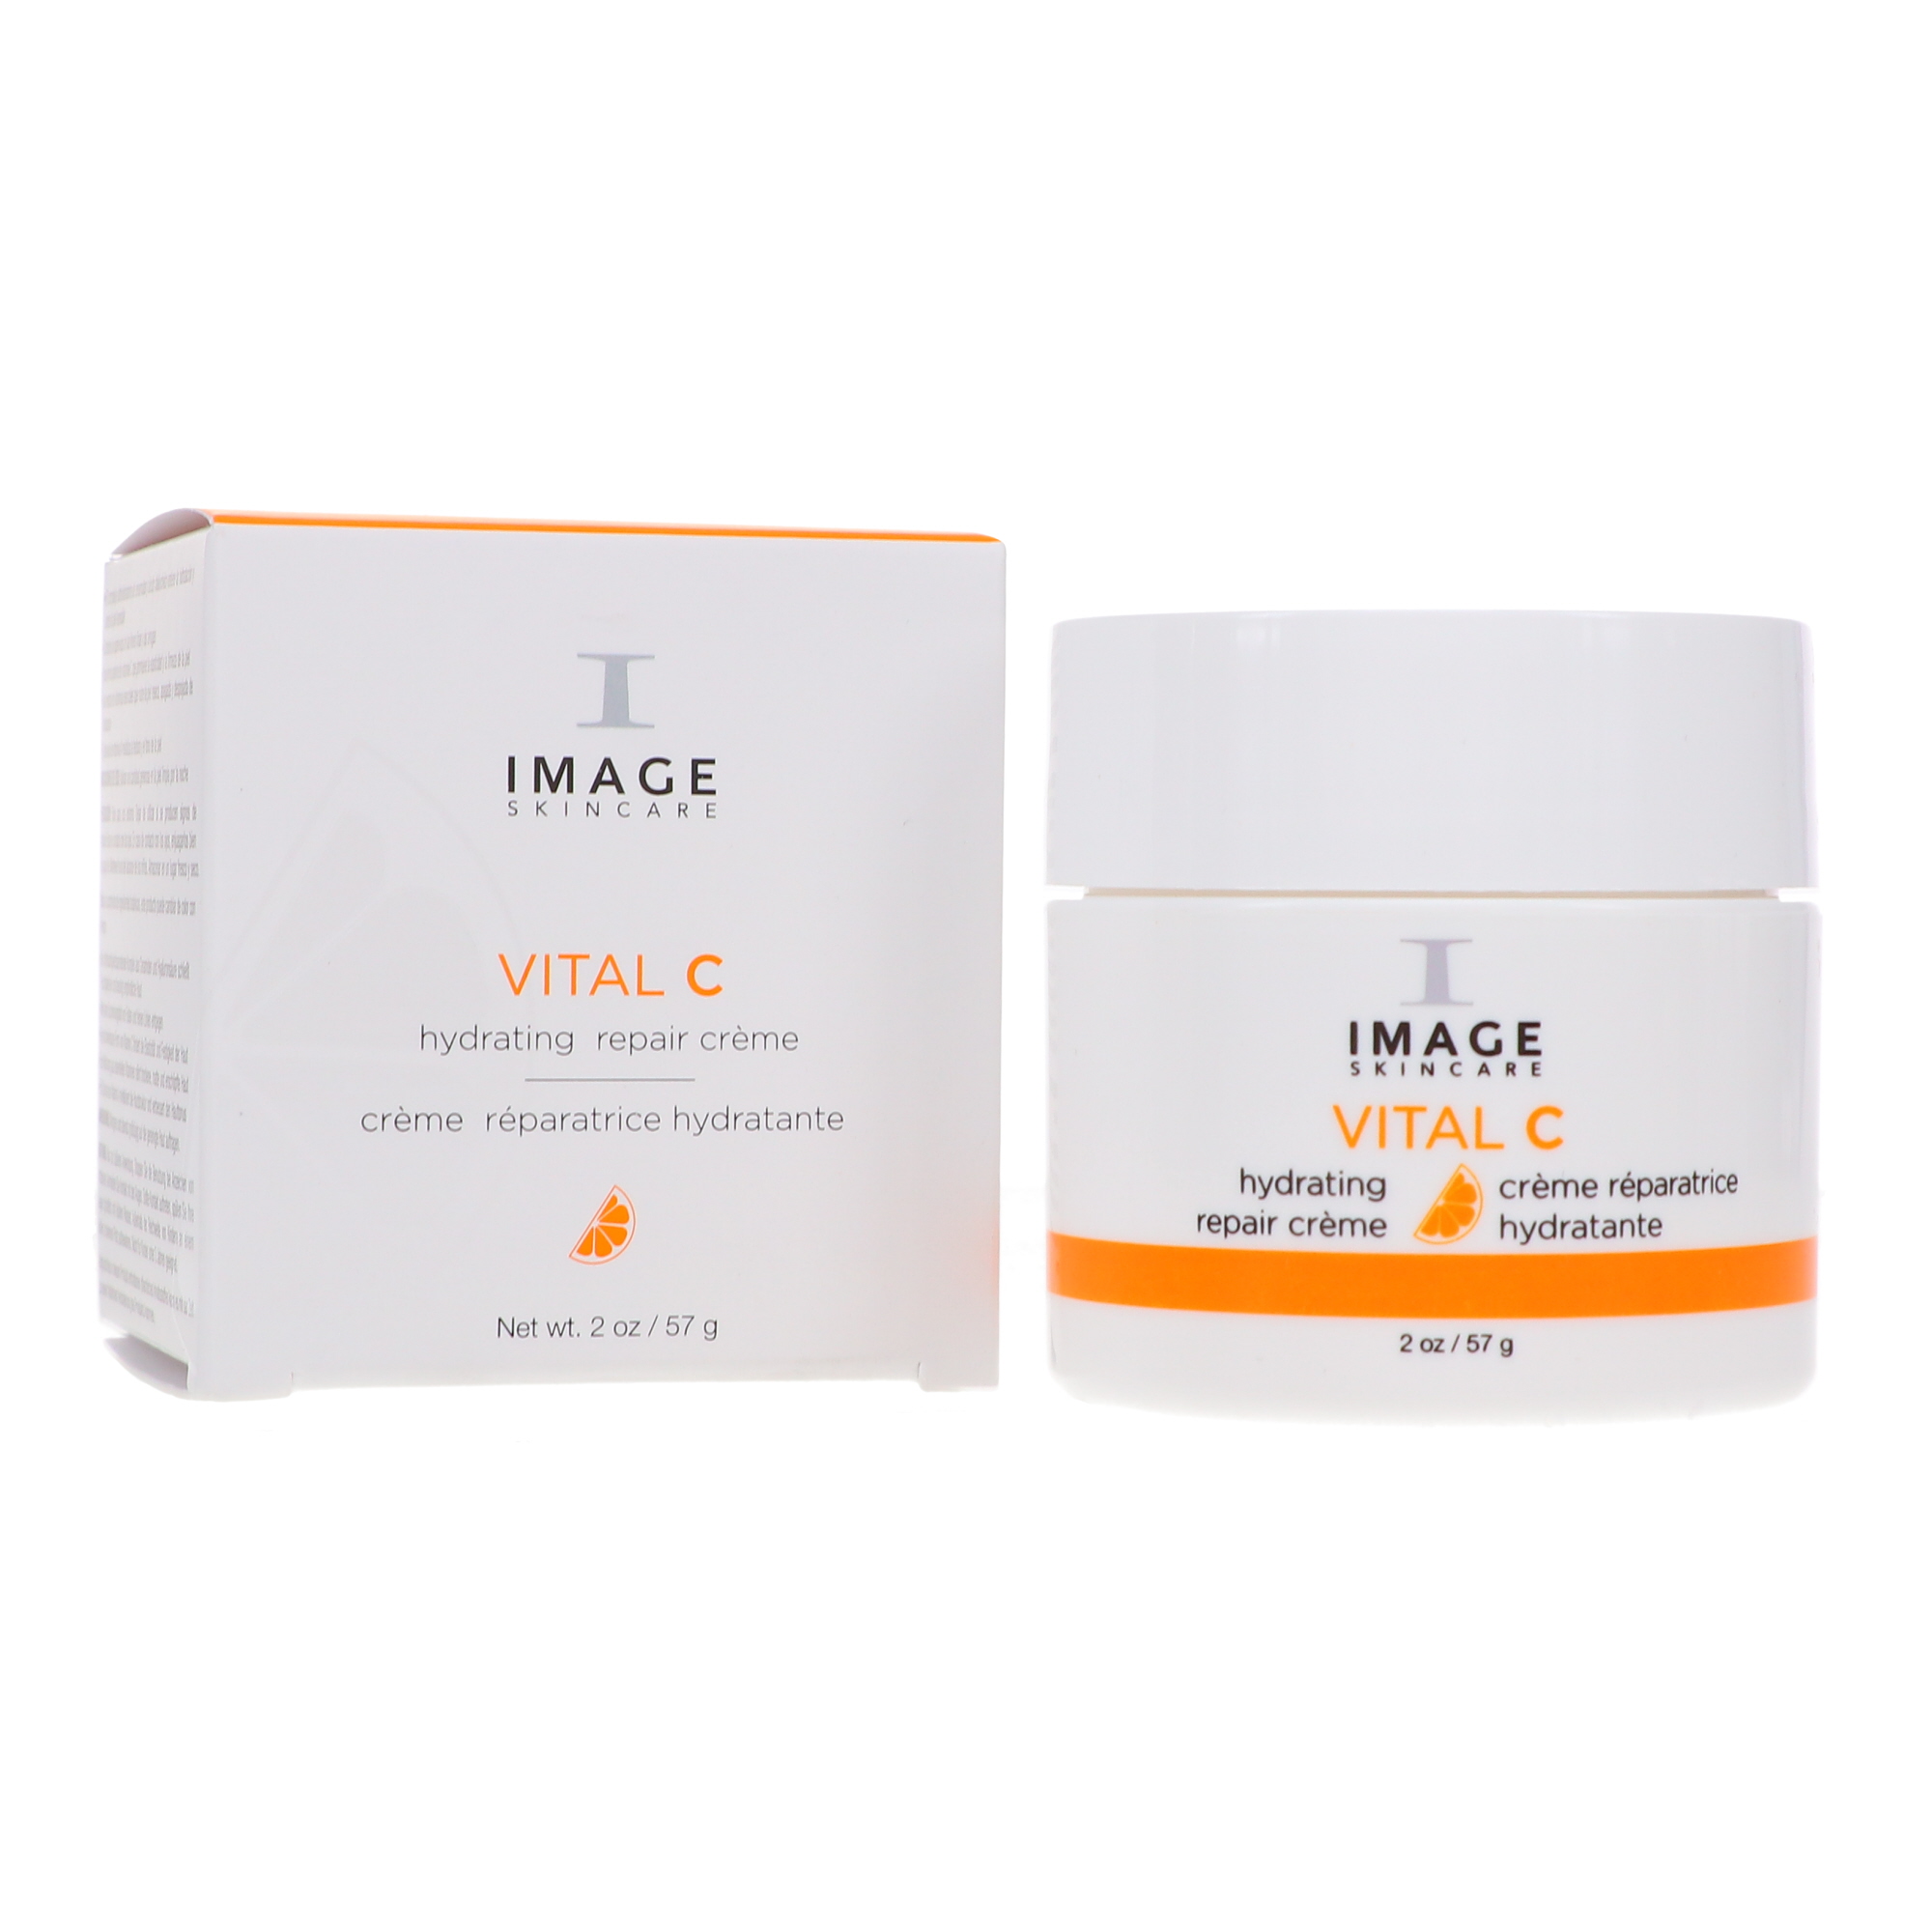 IMAGE Skincare Vital C Hydrating Repair Creme 2 oz - image 1 of 8